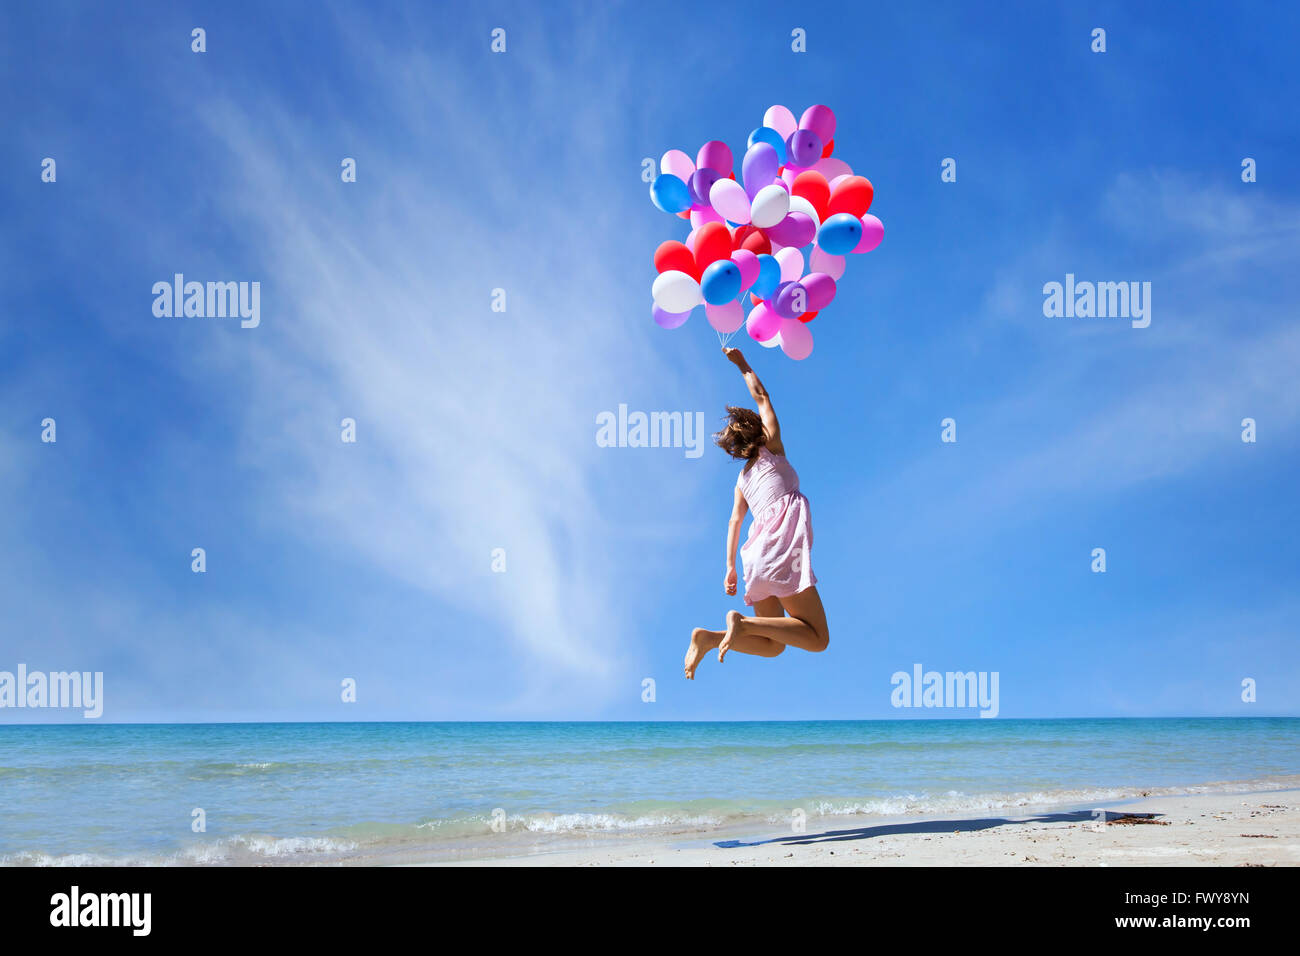 Dream concept, girl flying sur ballons multicolores dans le ciel bleu, de l'imagination et la créativité Banque D'Images